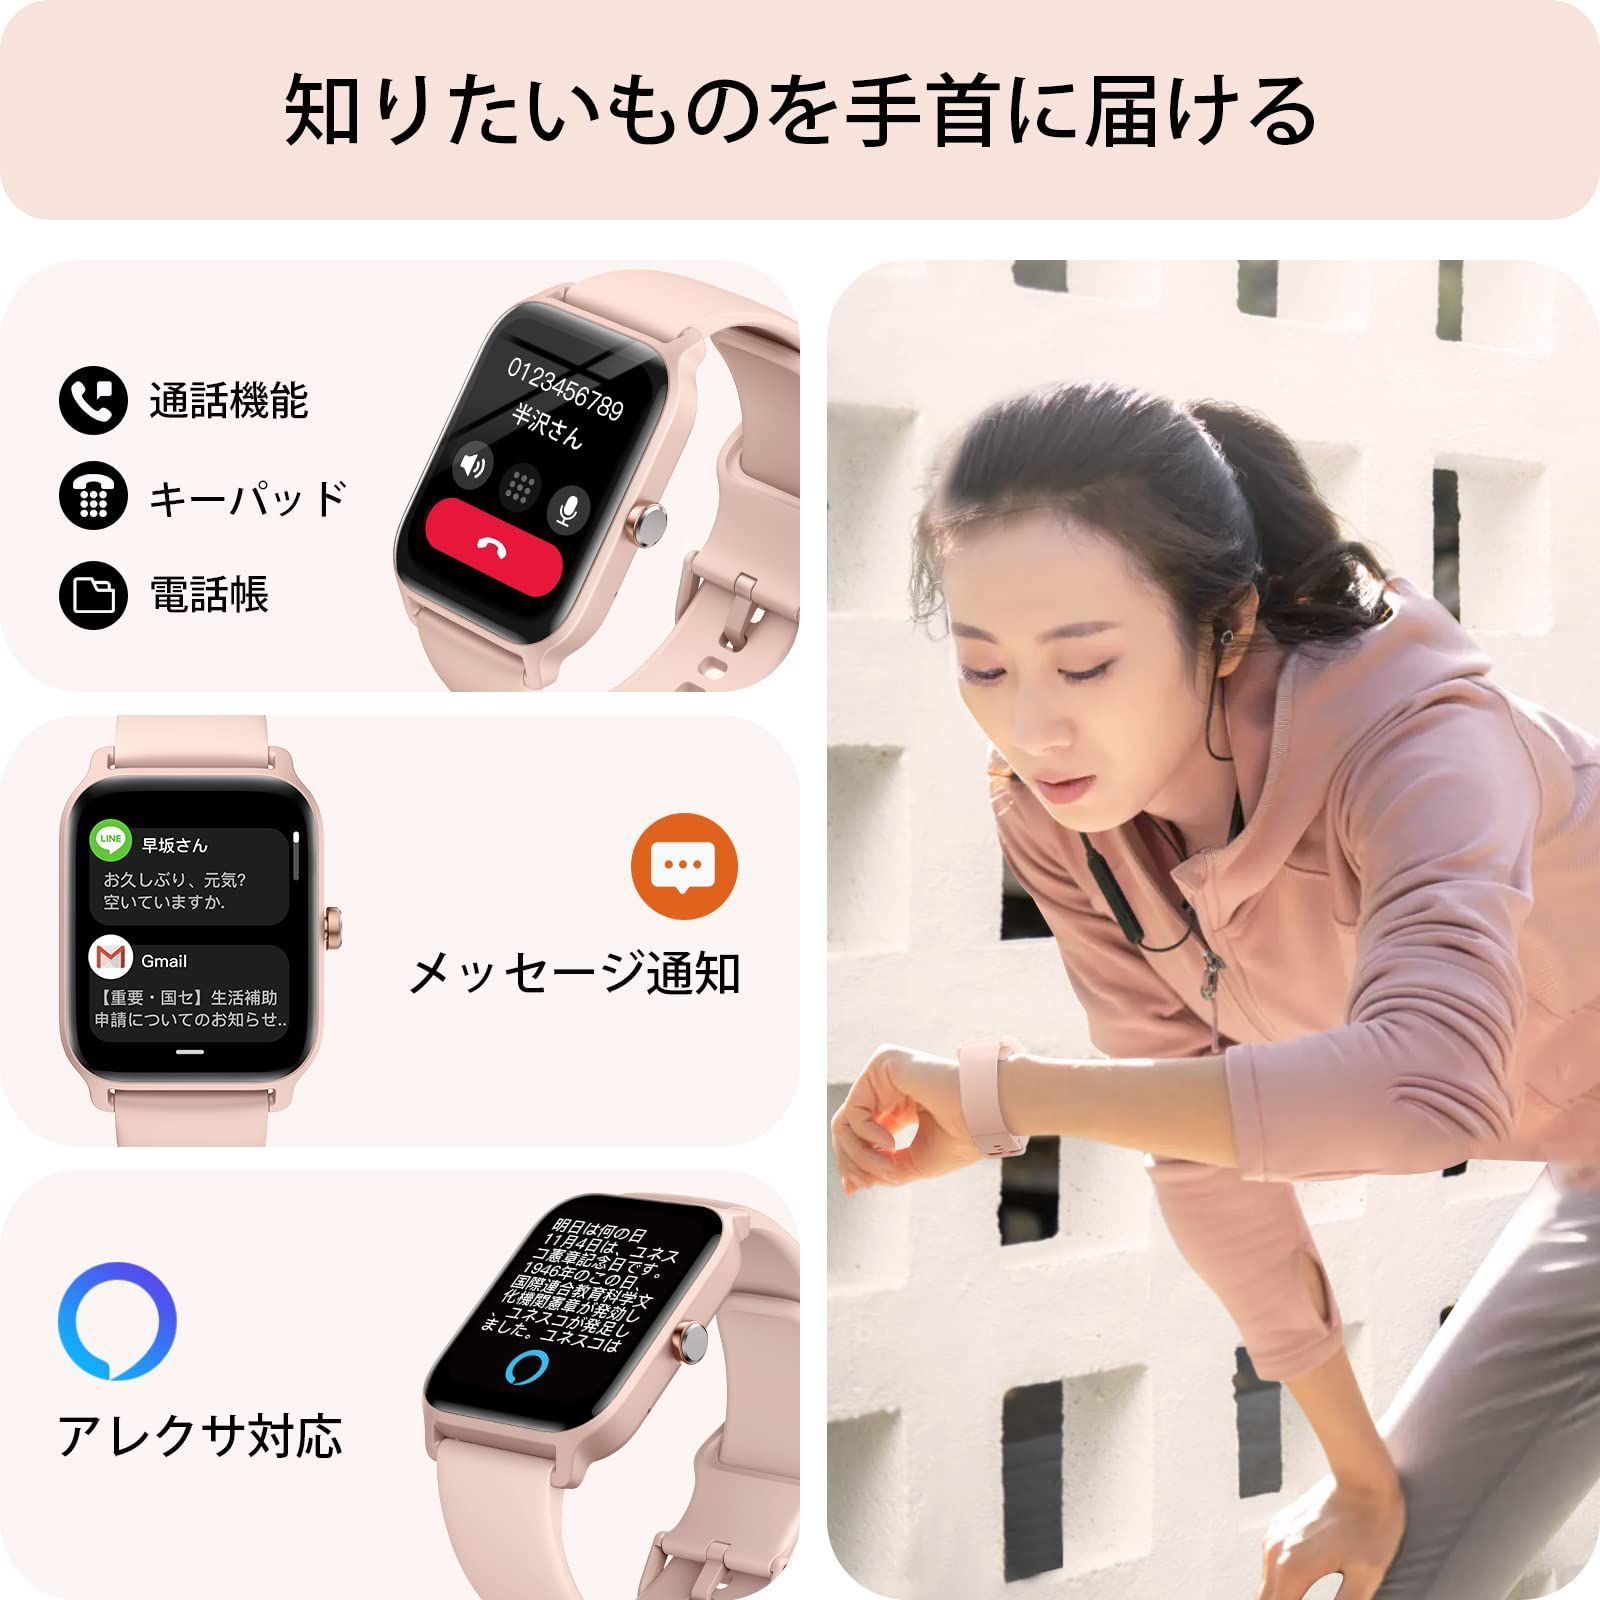 色: ピンク】スマートウォッチ iphone対応 Alexa対応 通話機能付き www